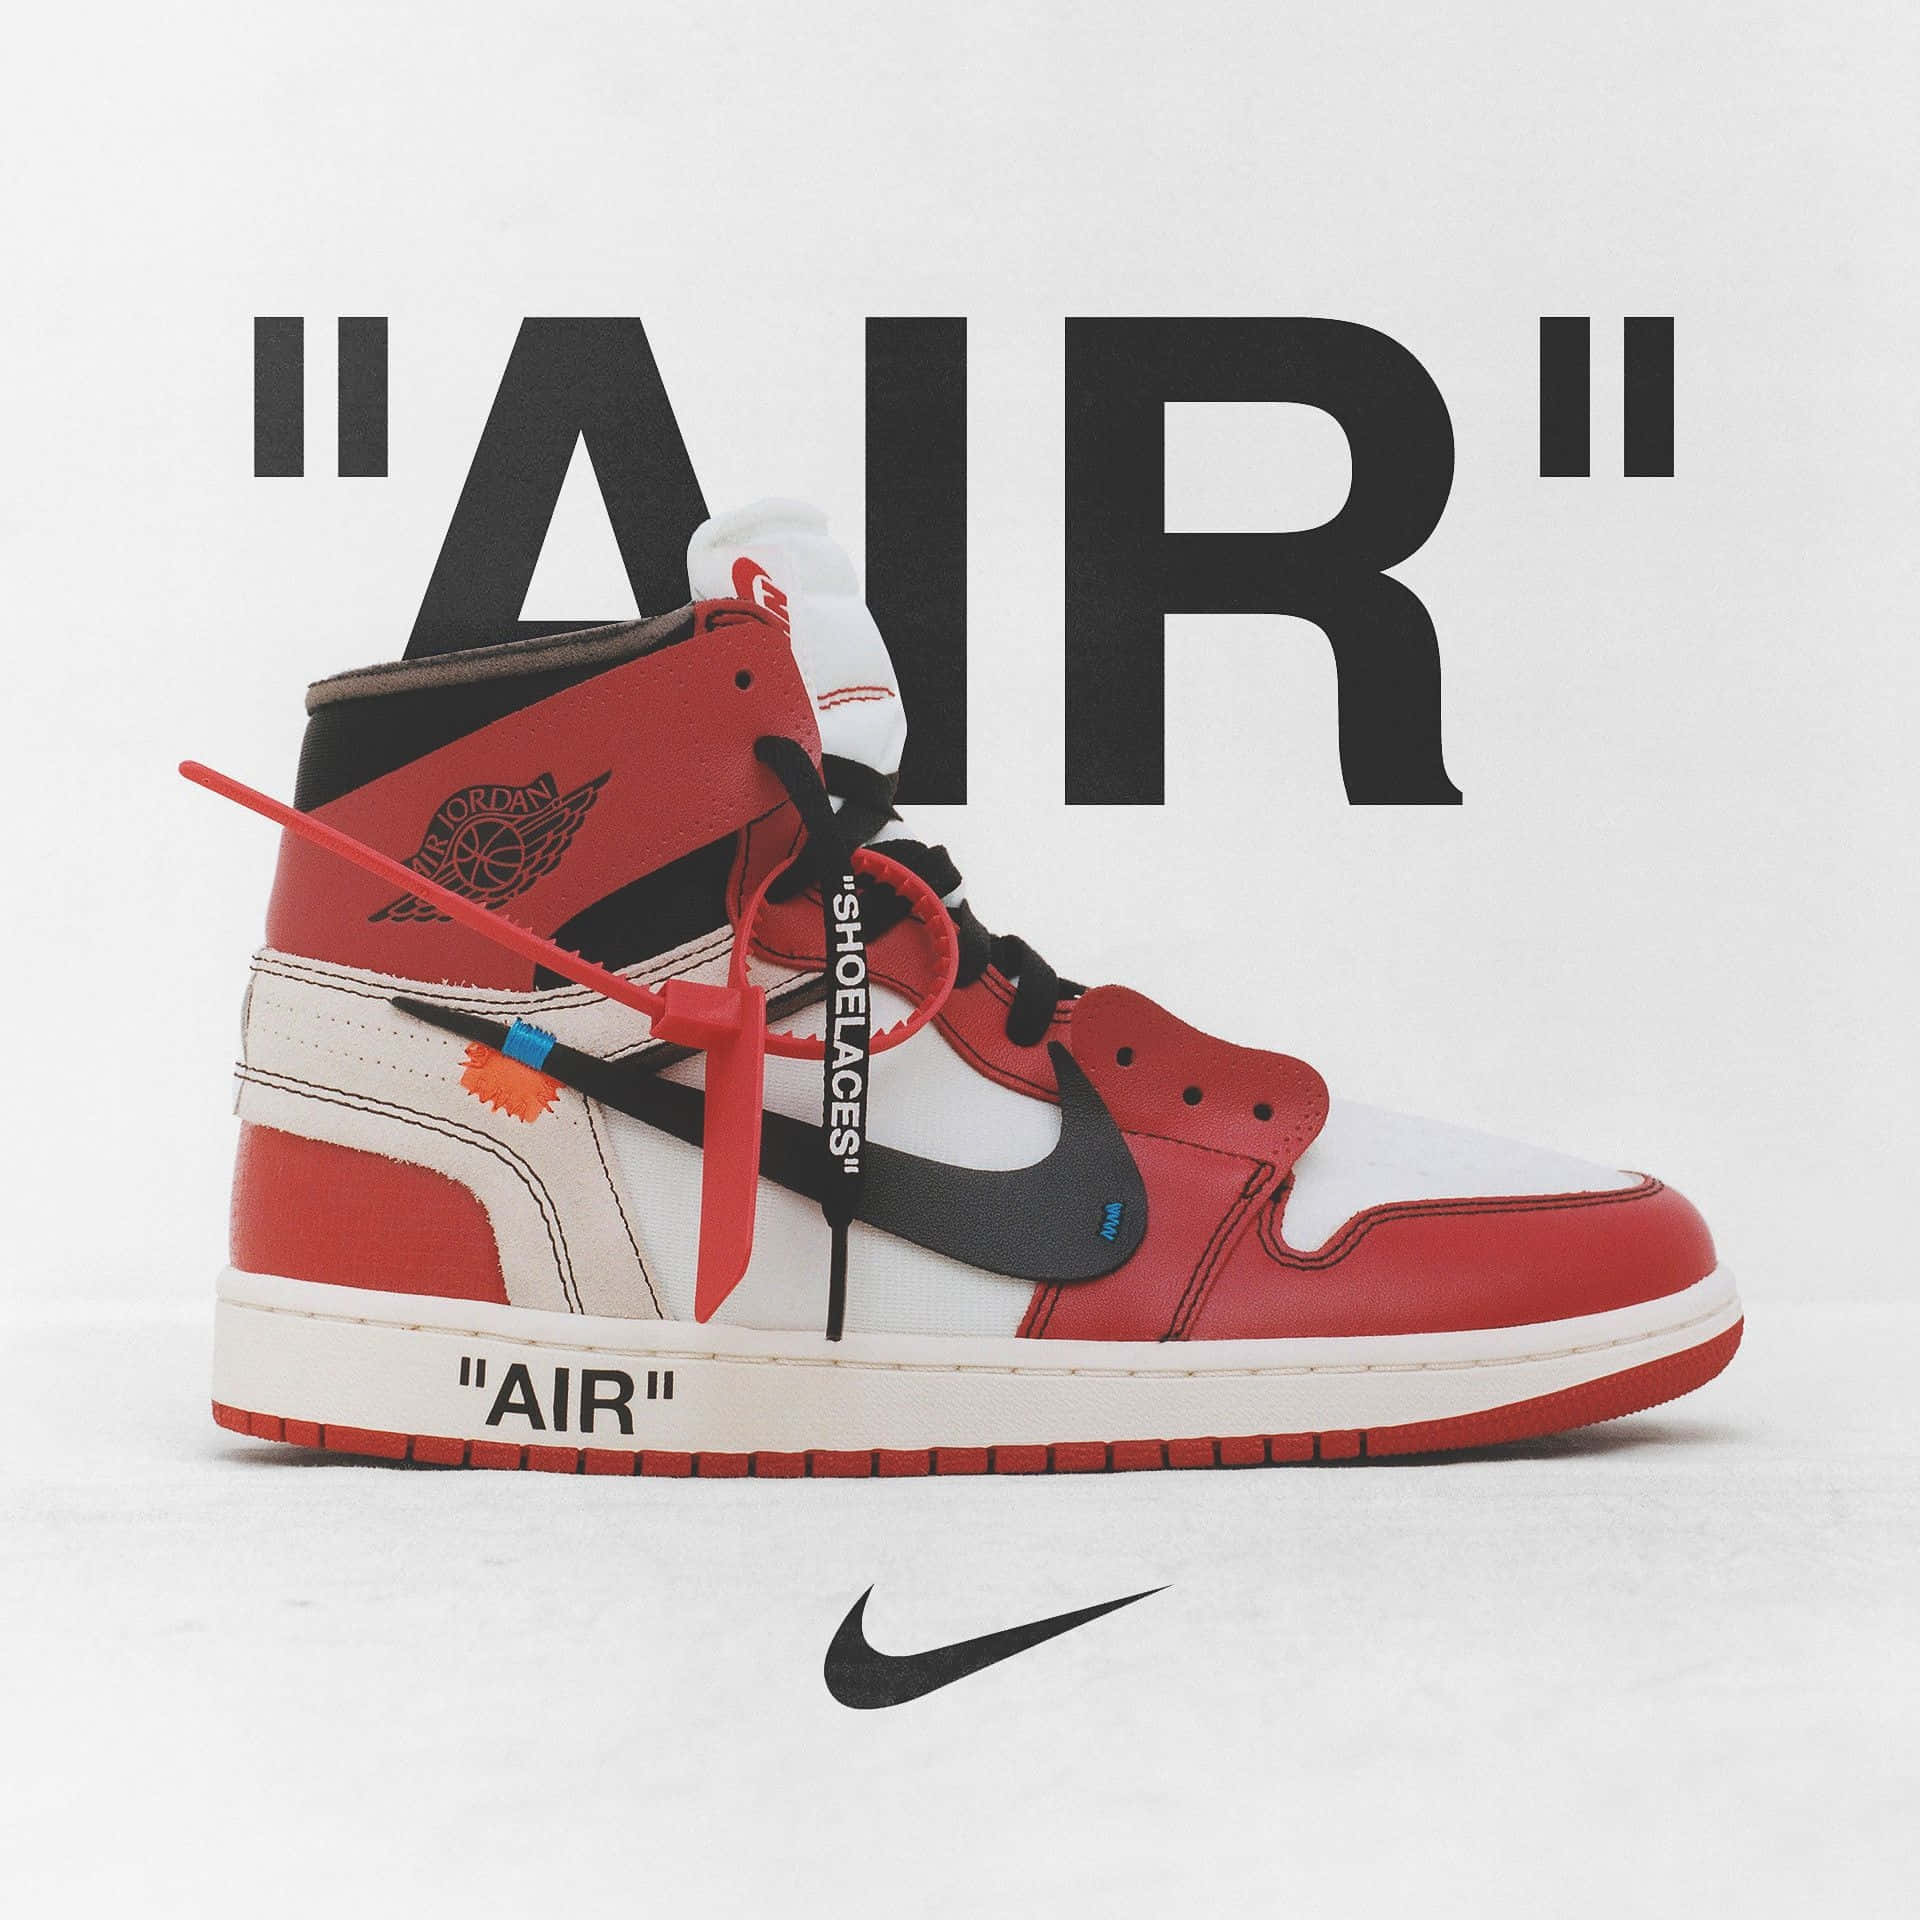 Nike Air Jordan 1 'air' Background